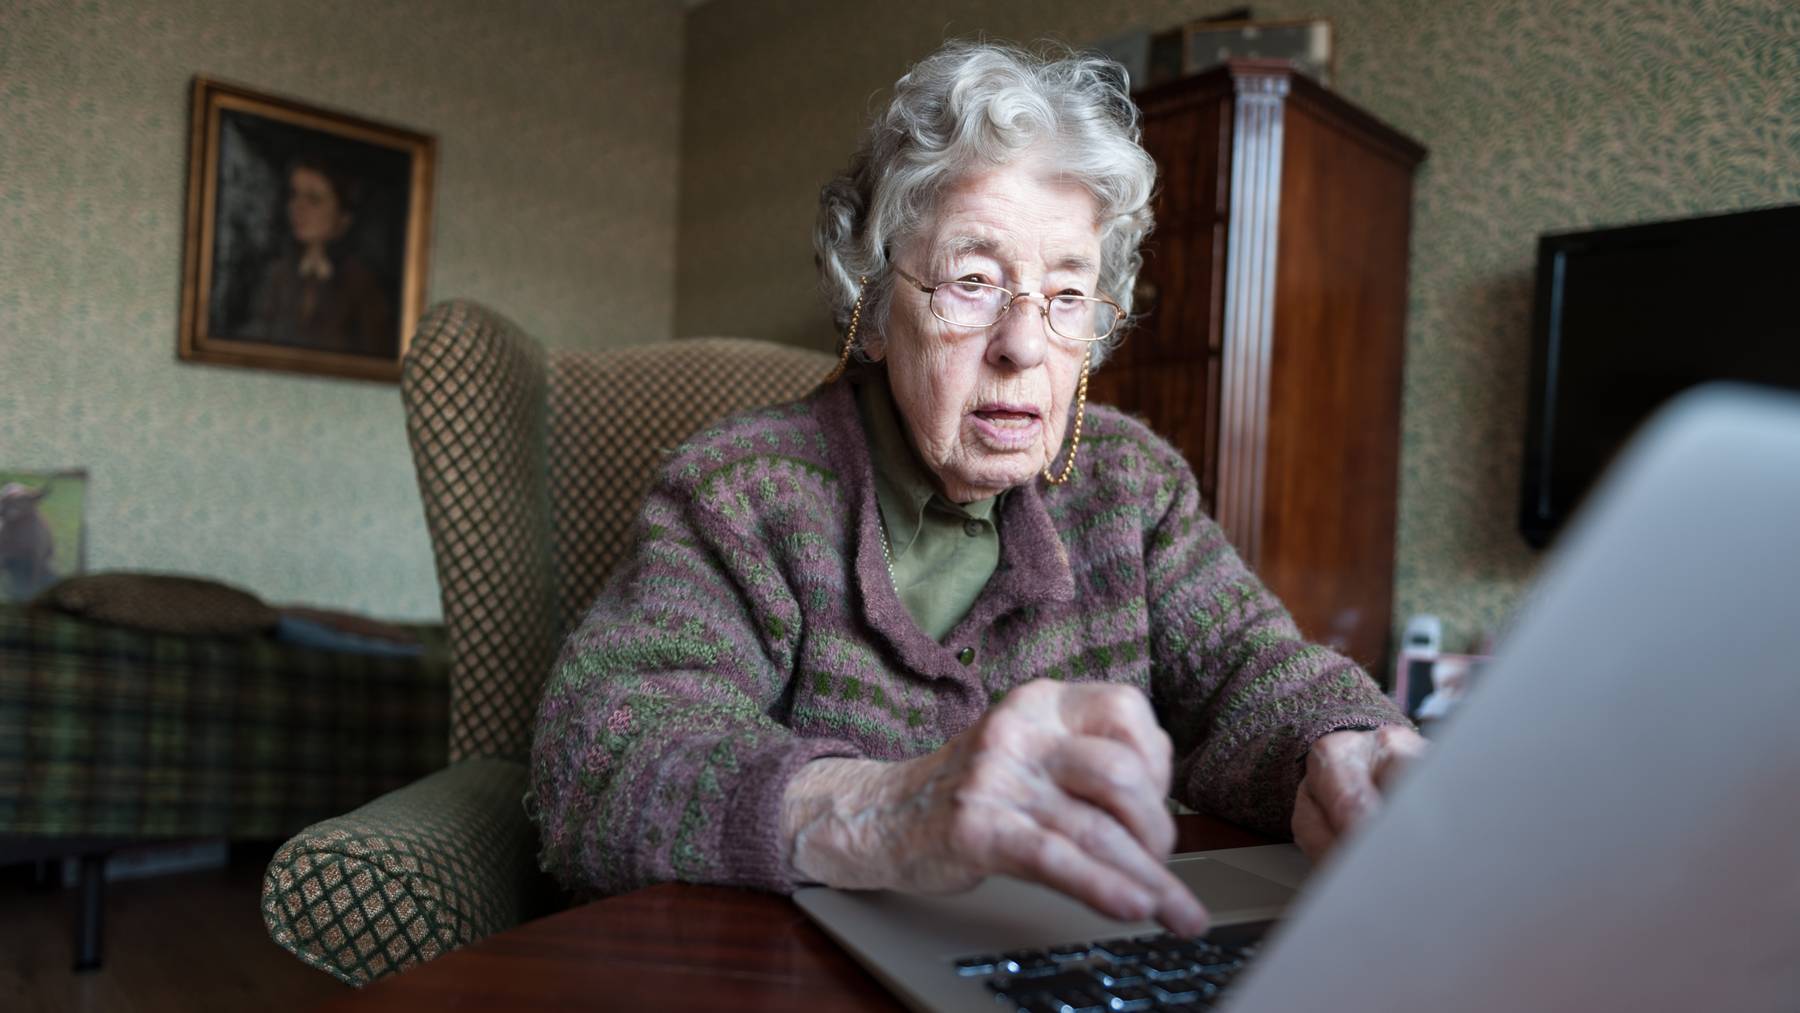 Ältere Menschen tun sich mit elektronischen Geräten oft schwer.